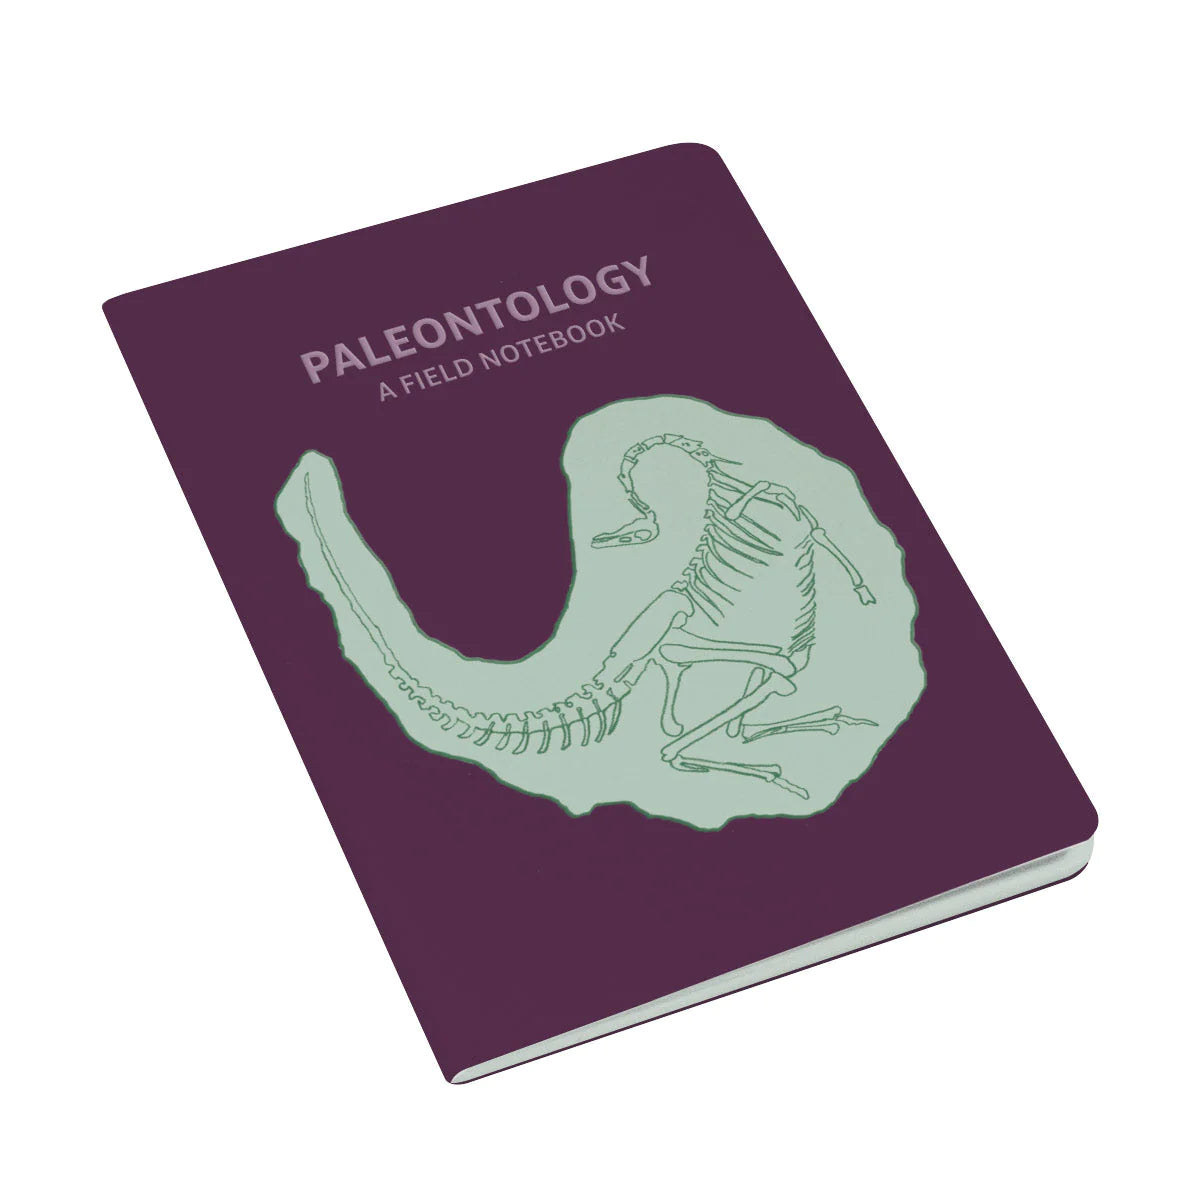 Paleontology Field Notebook